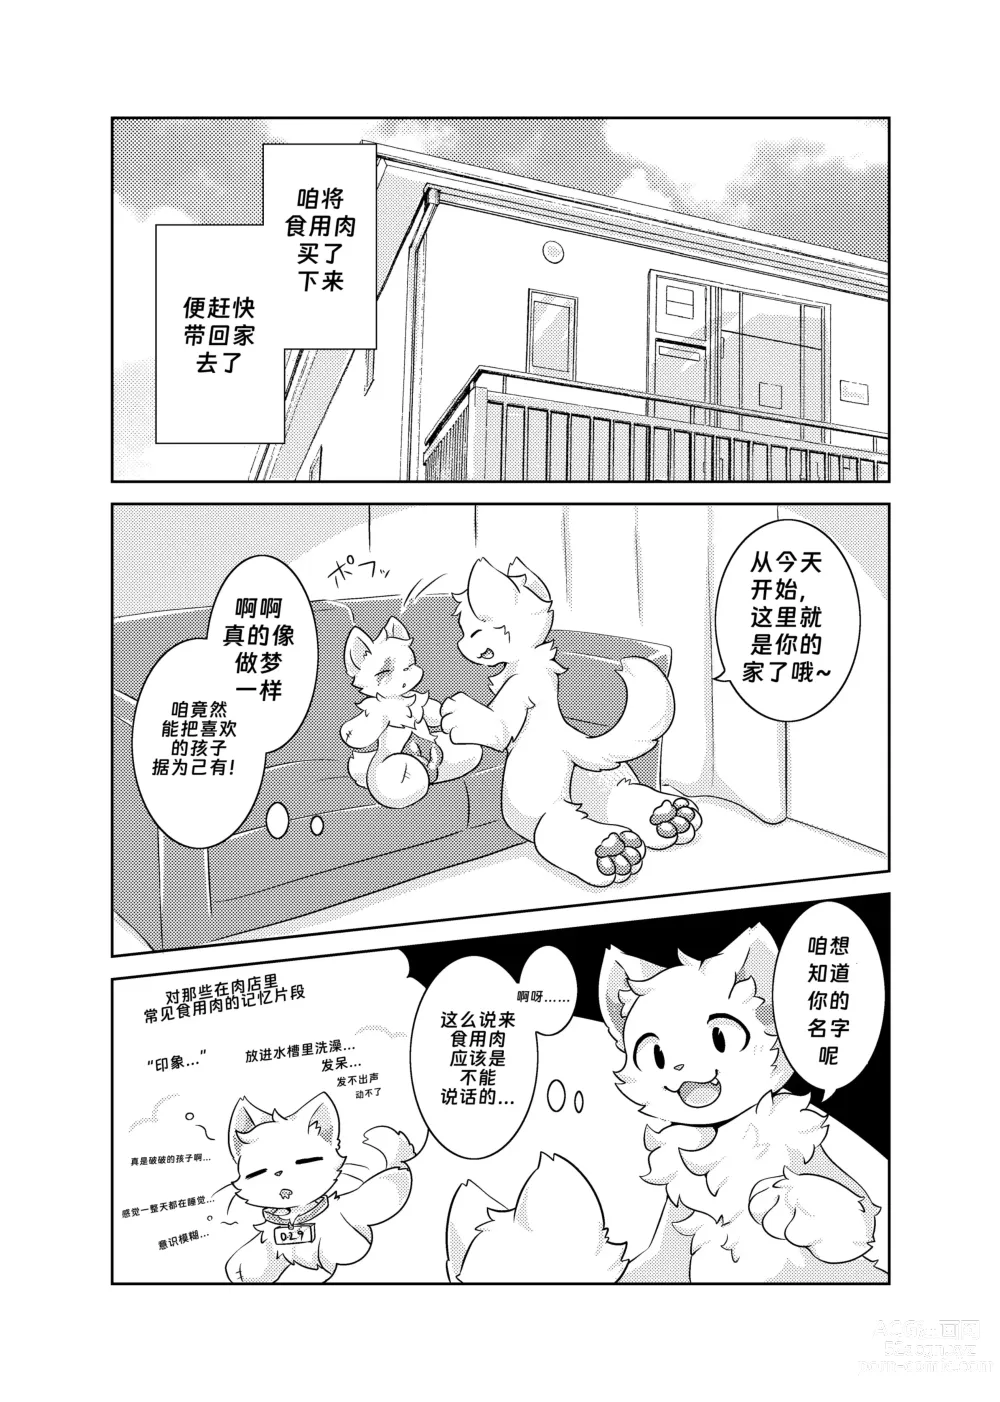 Page 4 of doujinshi Bokuyo motsuni no oishii seikatu.R-18G